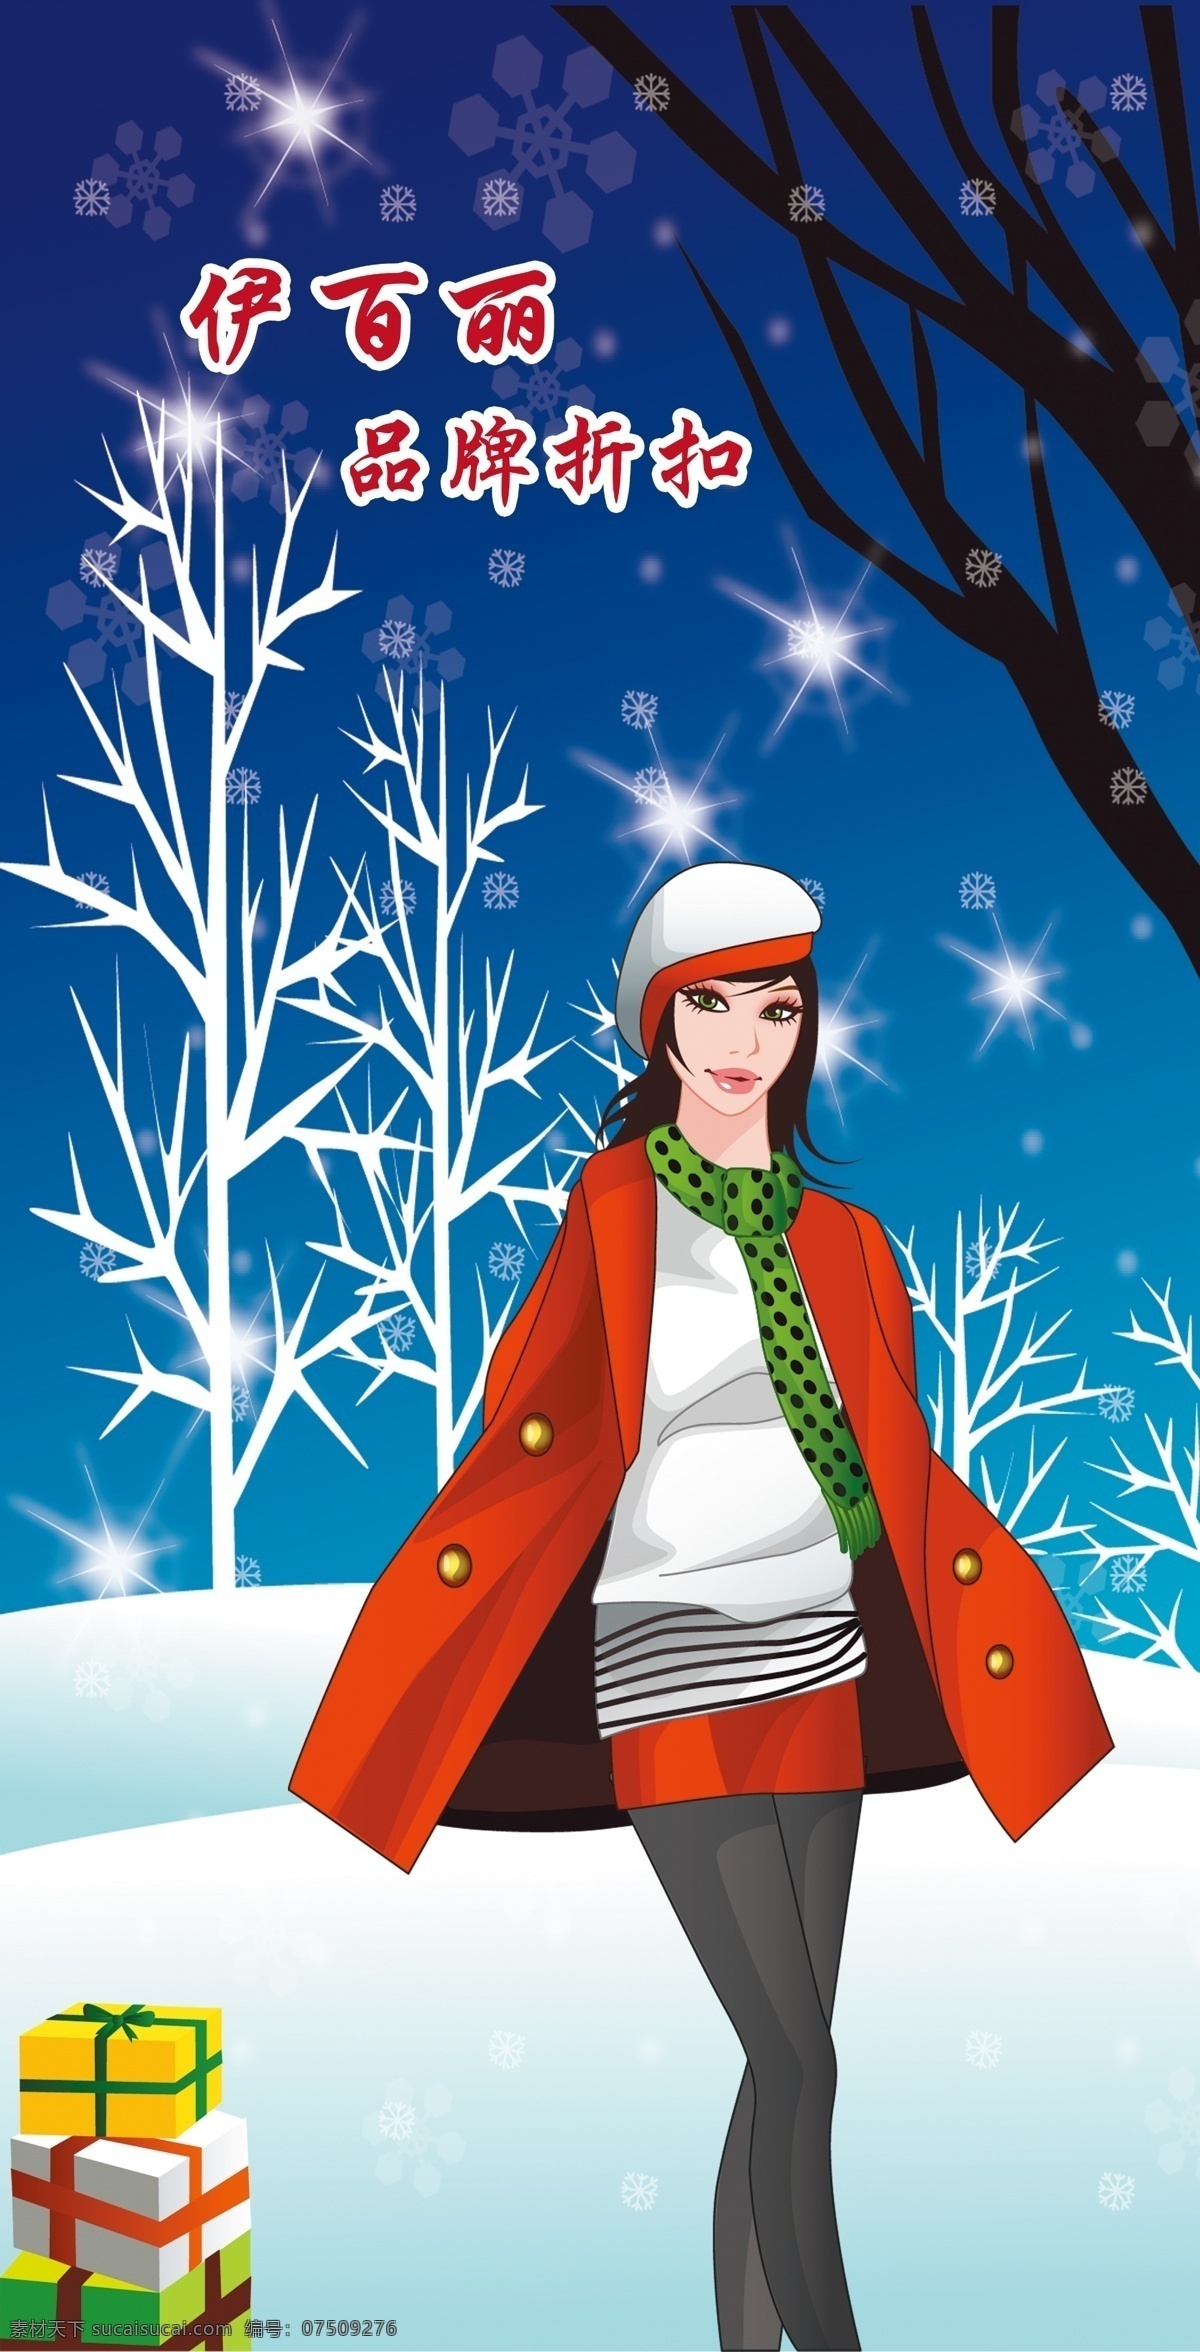 服装店海报 服装 衣服 冬季 可爱背景 寒冷 冬天 时尚服装 时尚衣服